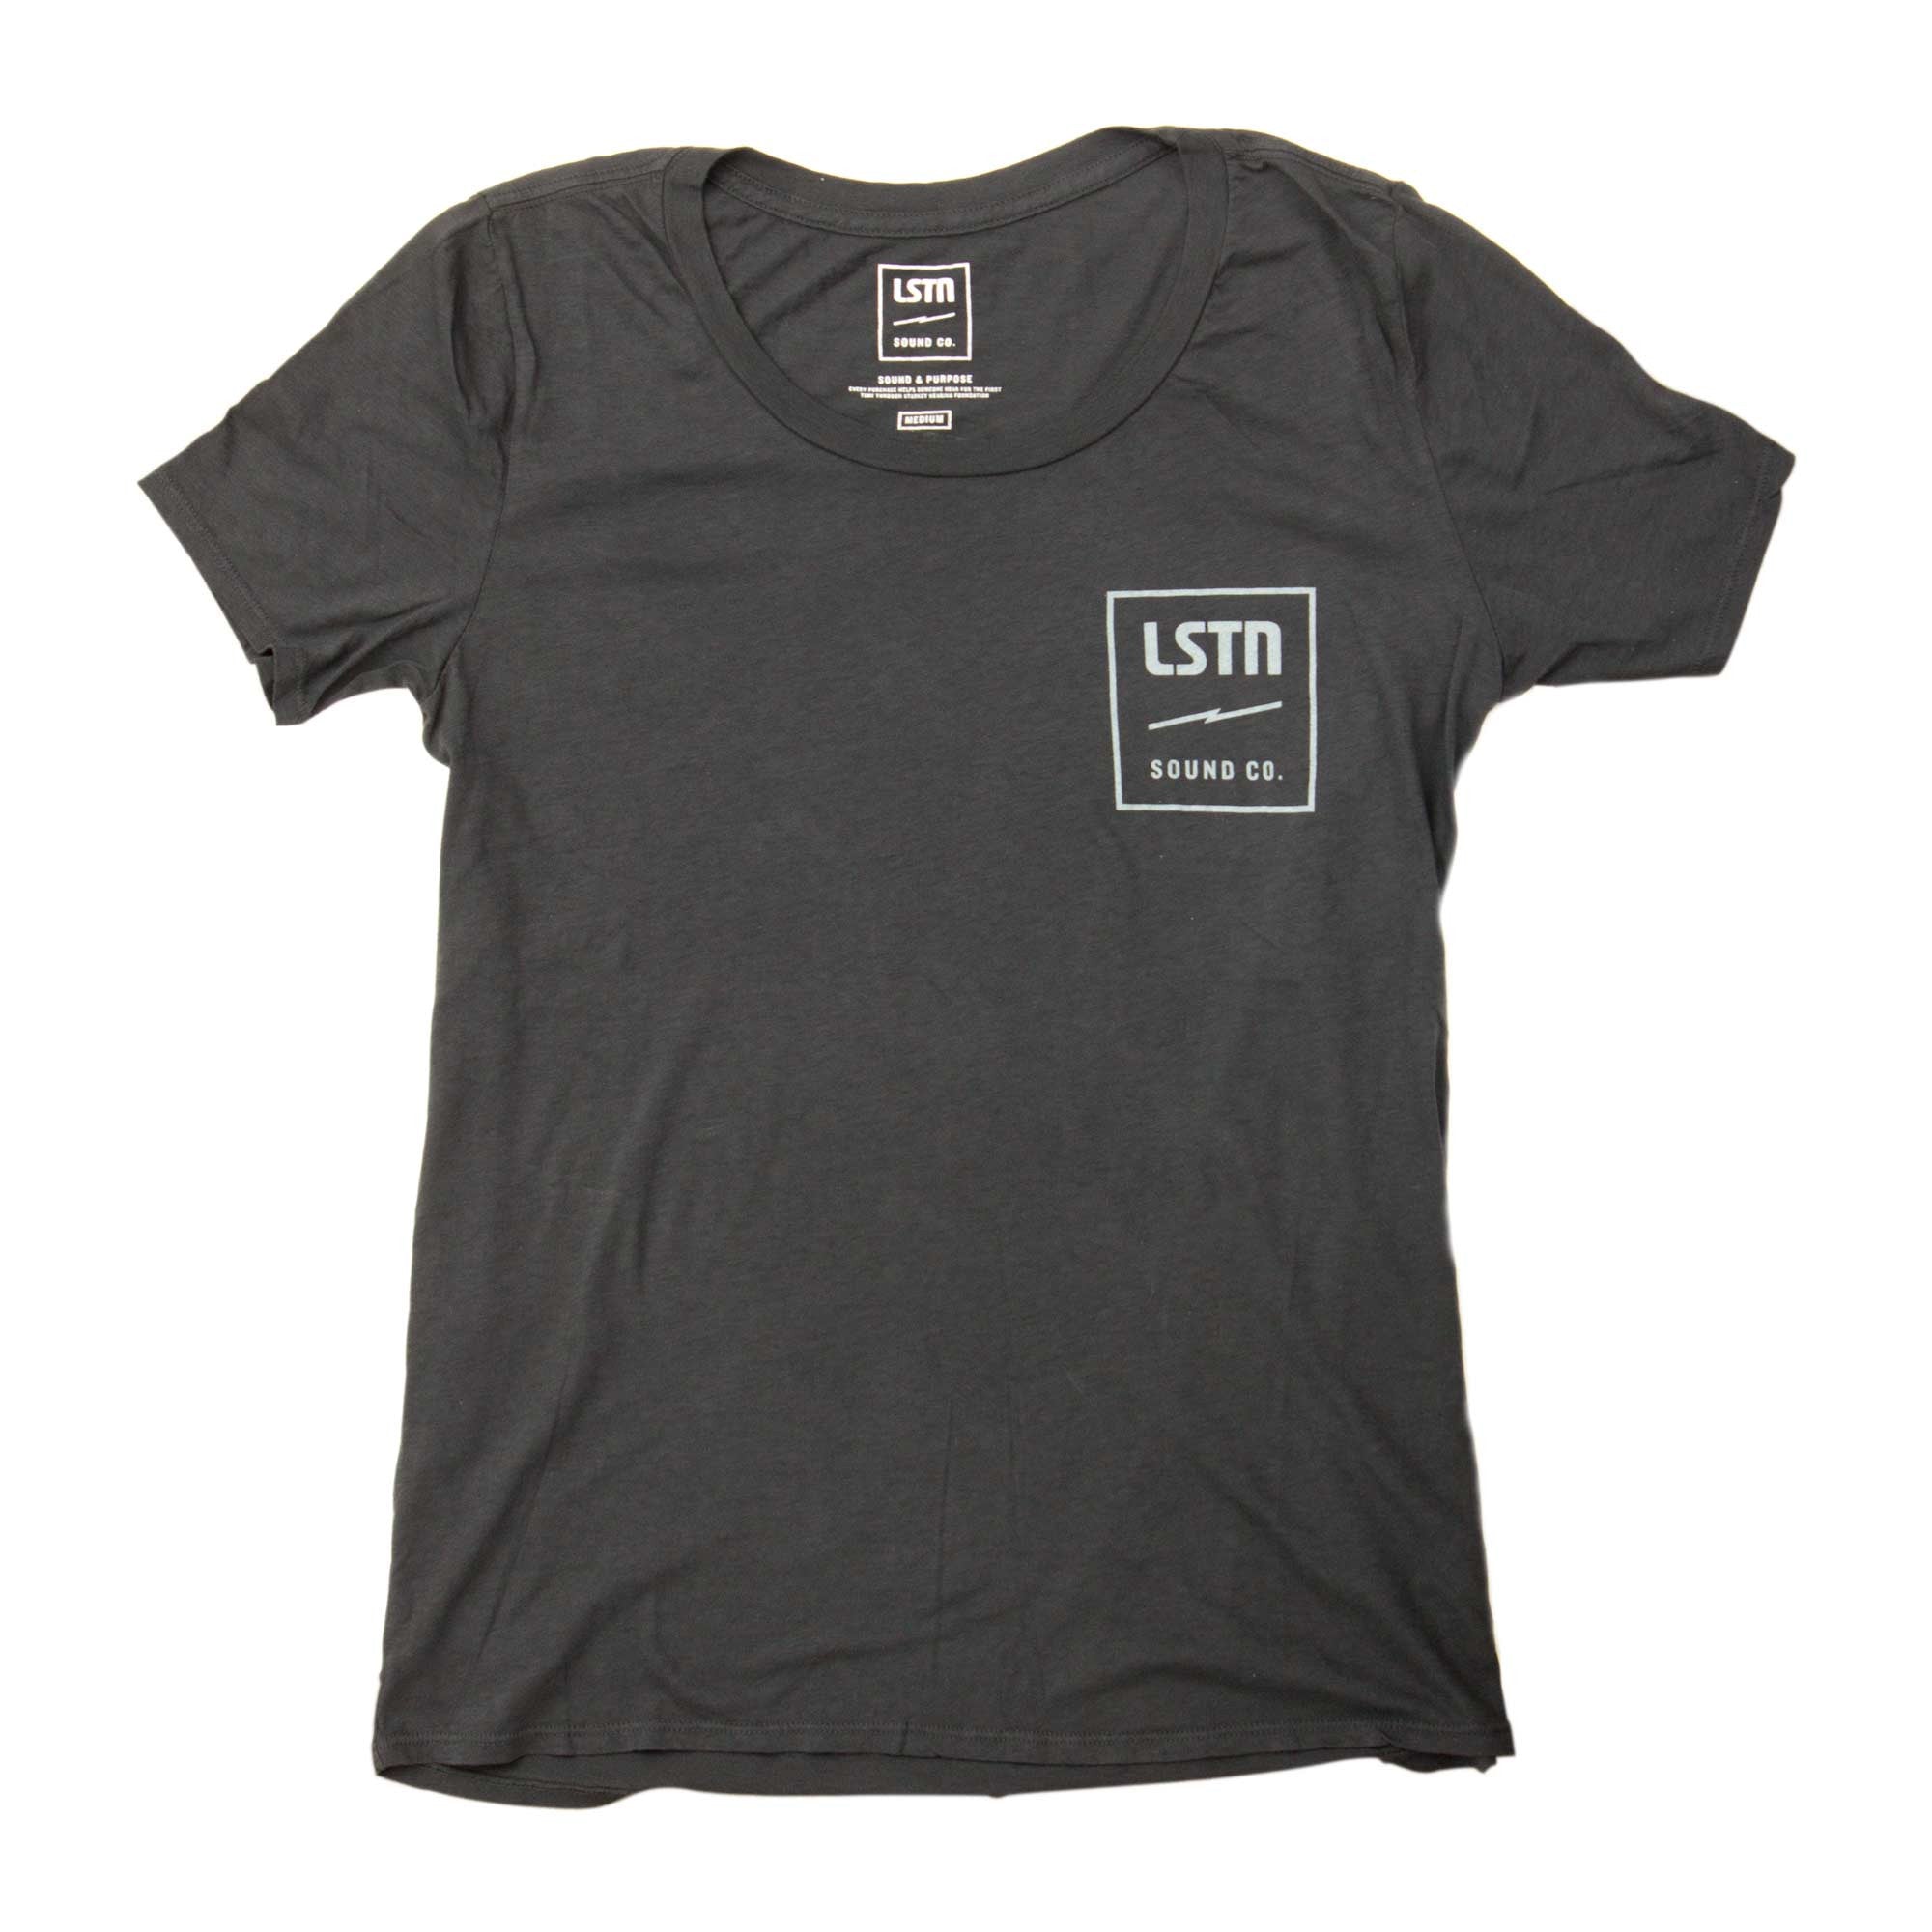 LSTN Logo T-shirt - Women's – LSTN Sound Co.